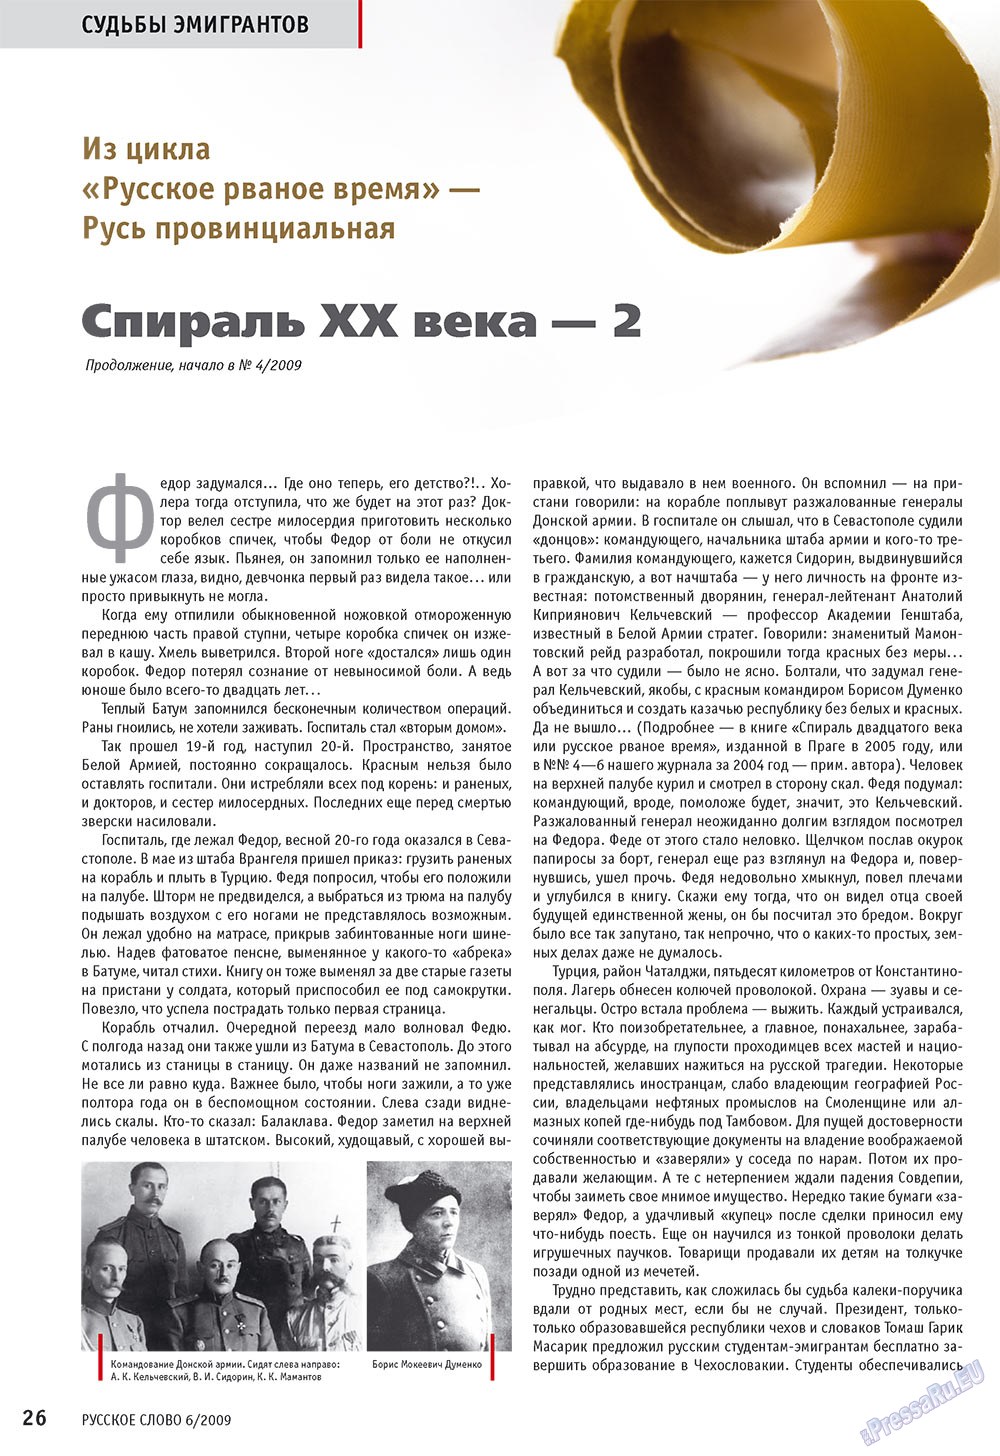 Русское слово, журнал. 2009 №6 стр.28